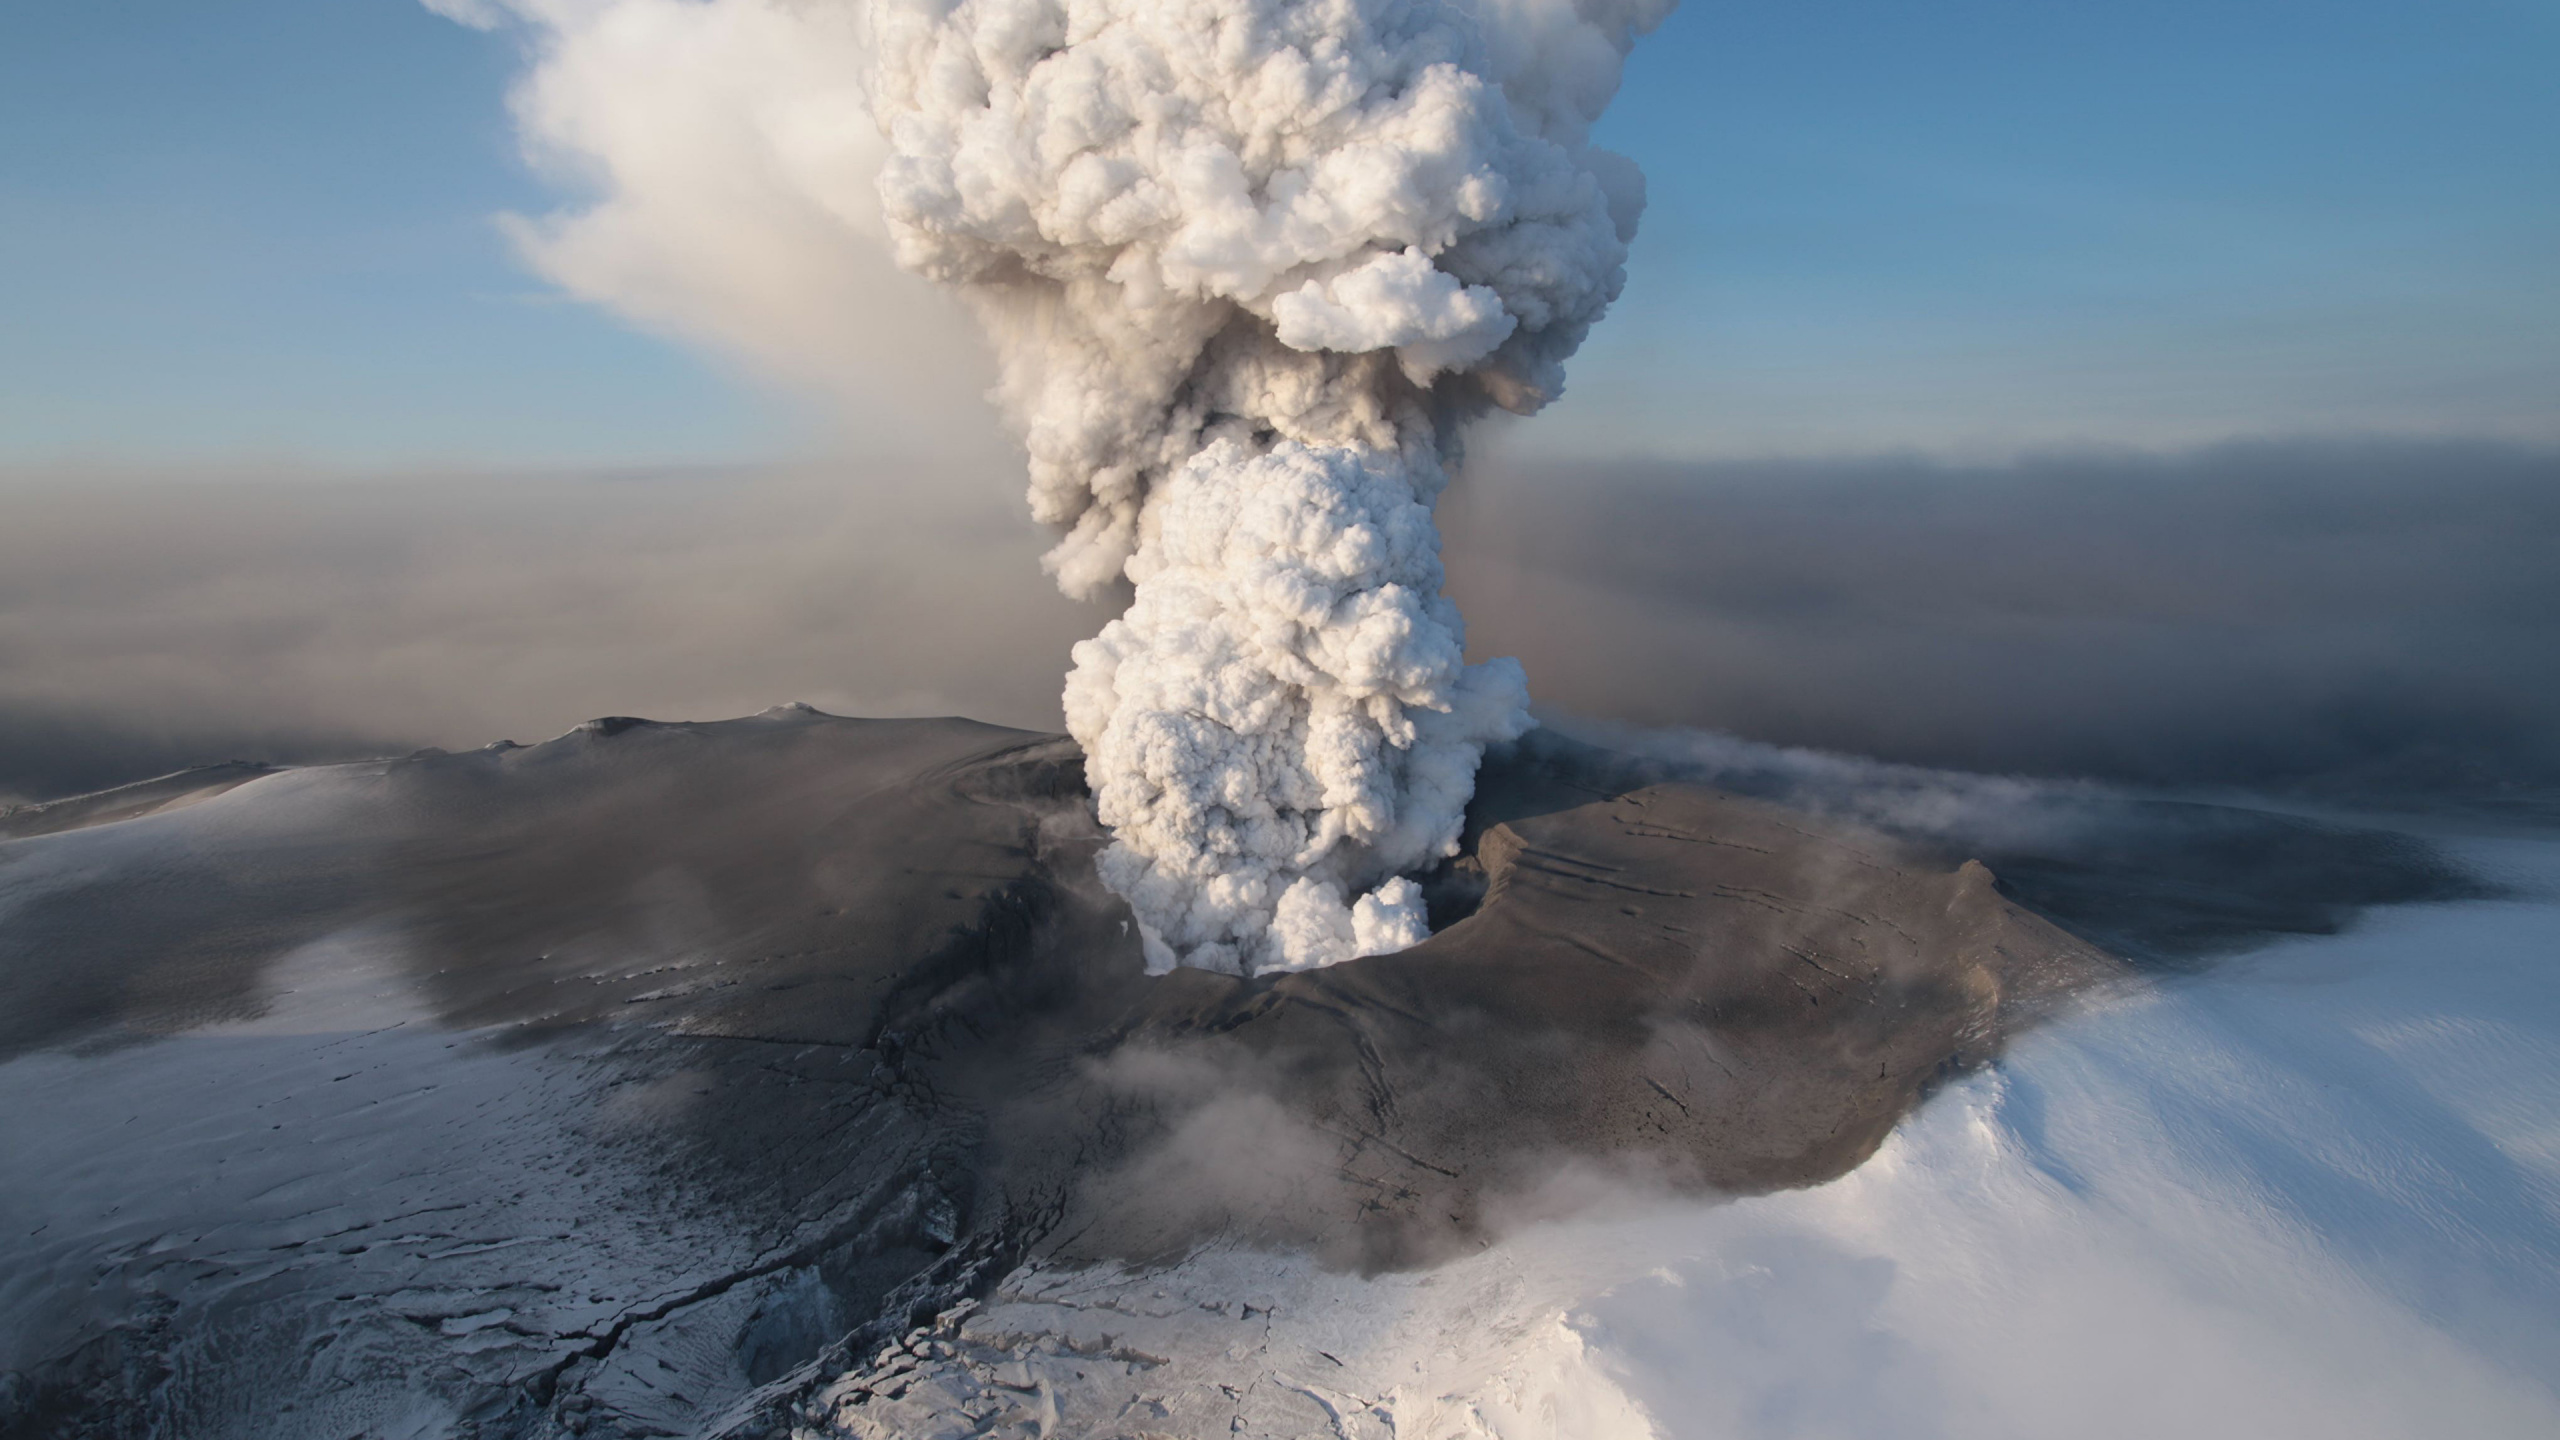 Обои 2010 извержения Eyjafjallajkull, вулкан, вулканический пепел, купол лавы, вулканического рельефа в разрешении 2560x1440